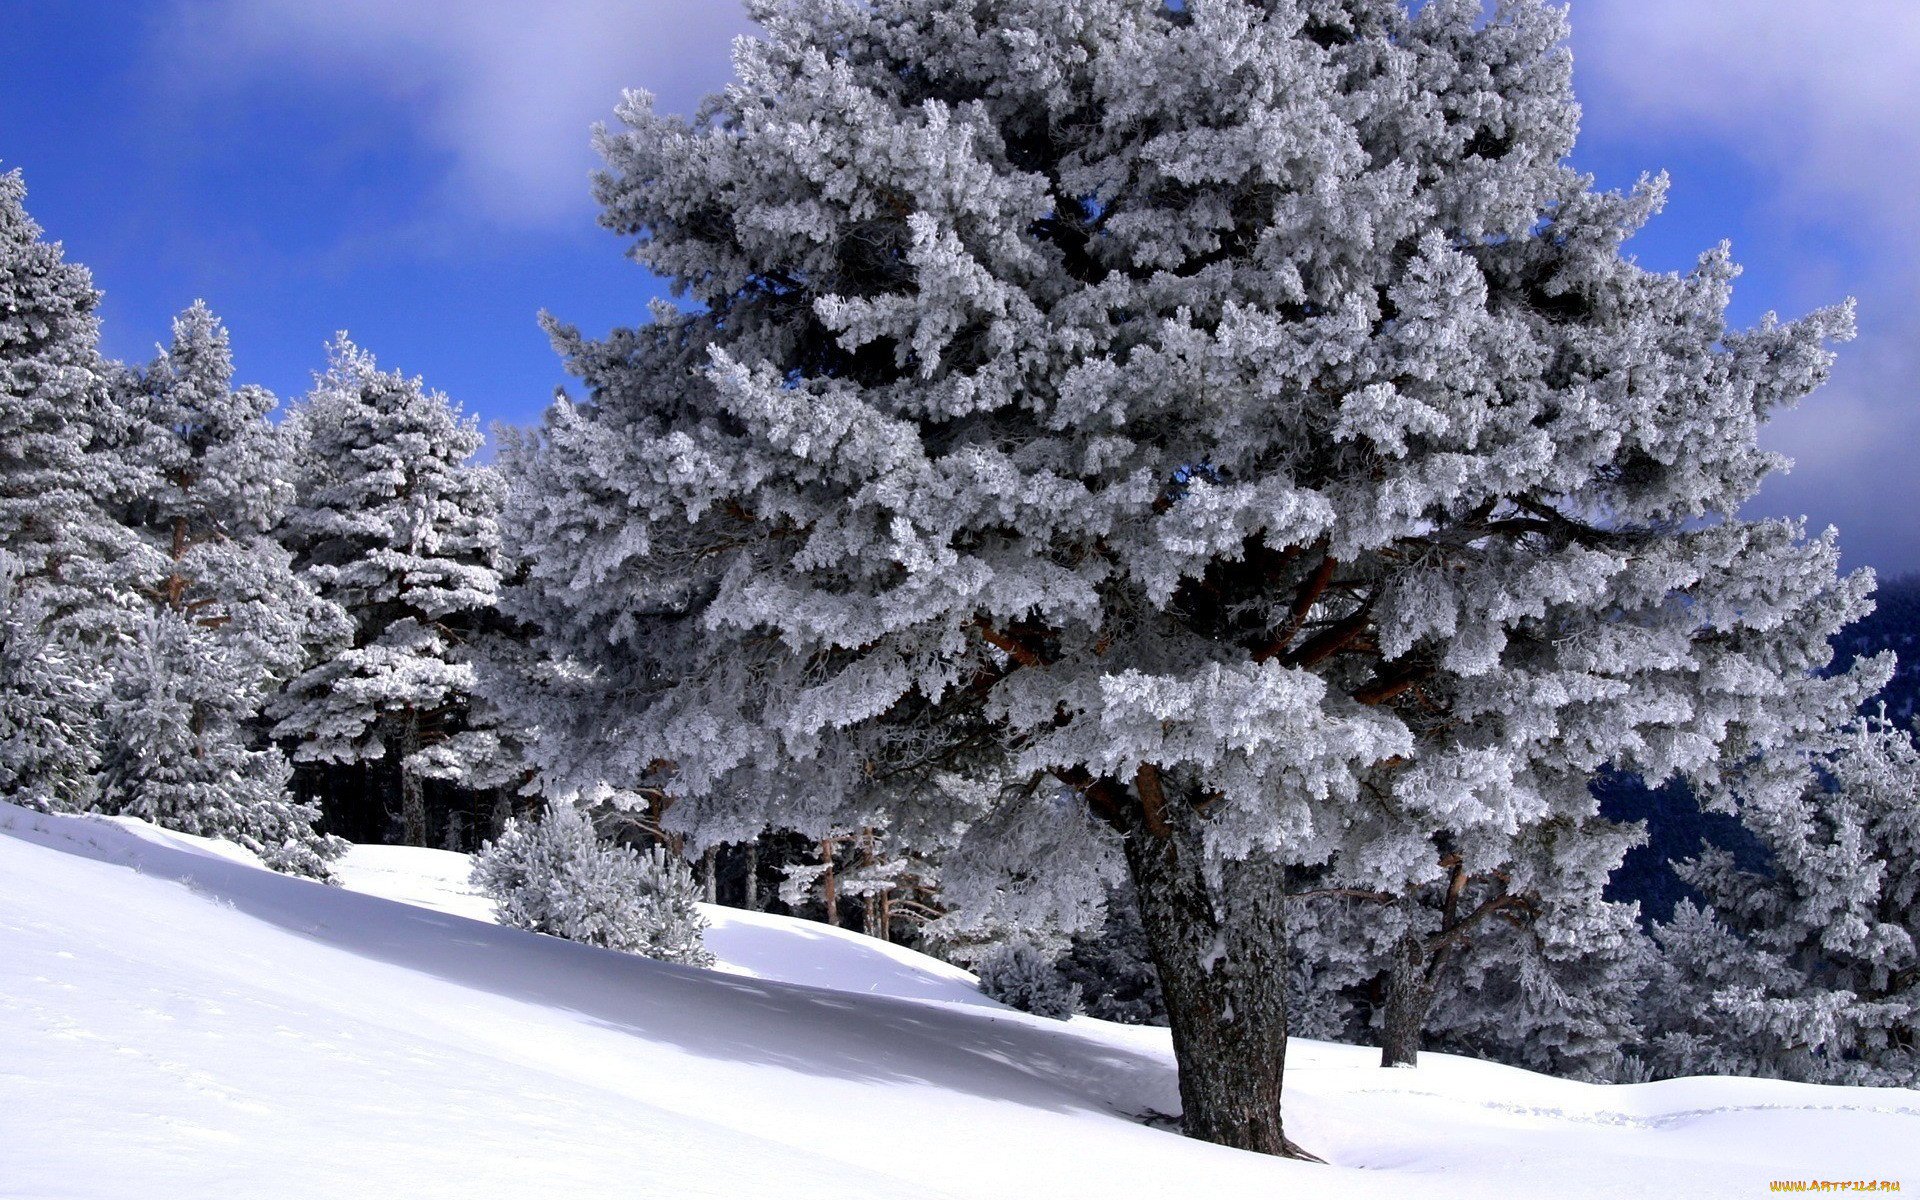 Гордума: деревья боятся соленого снега